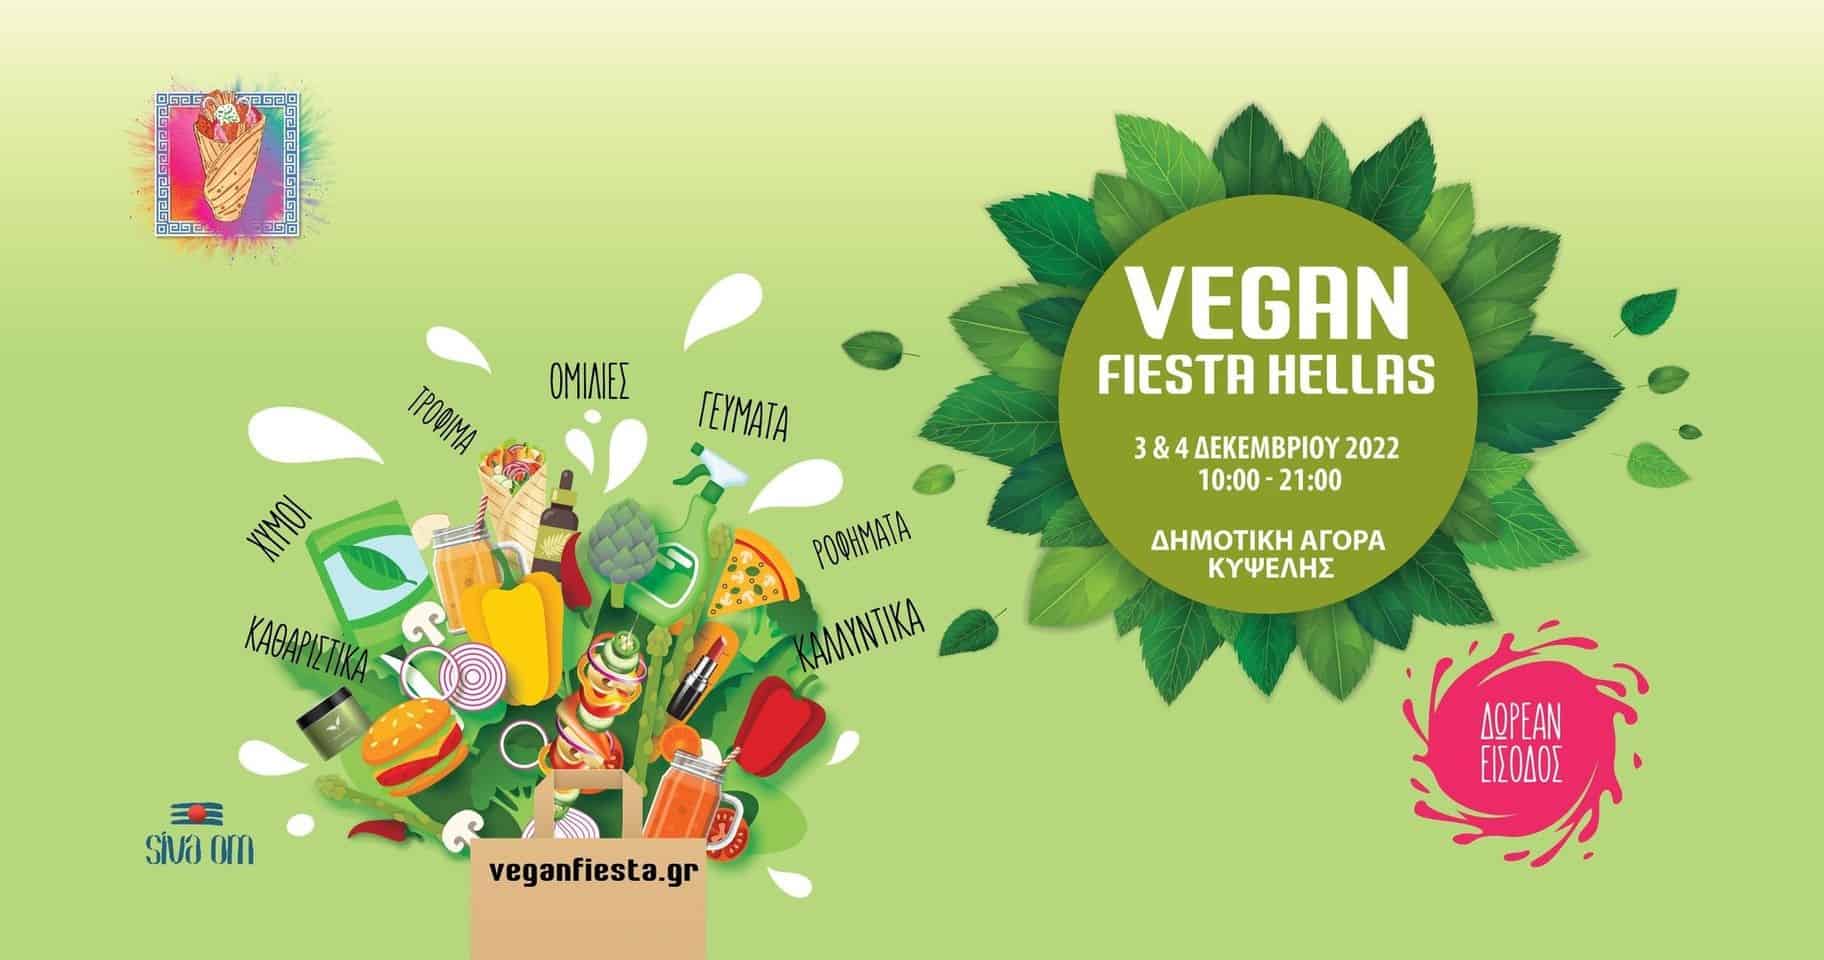 Vegan Fiesta Hellas 2022